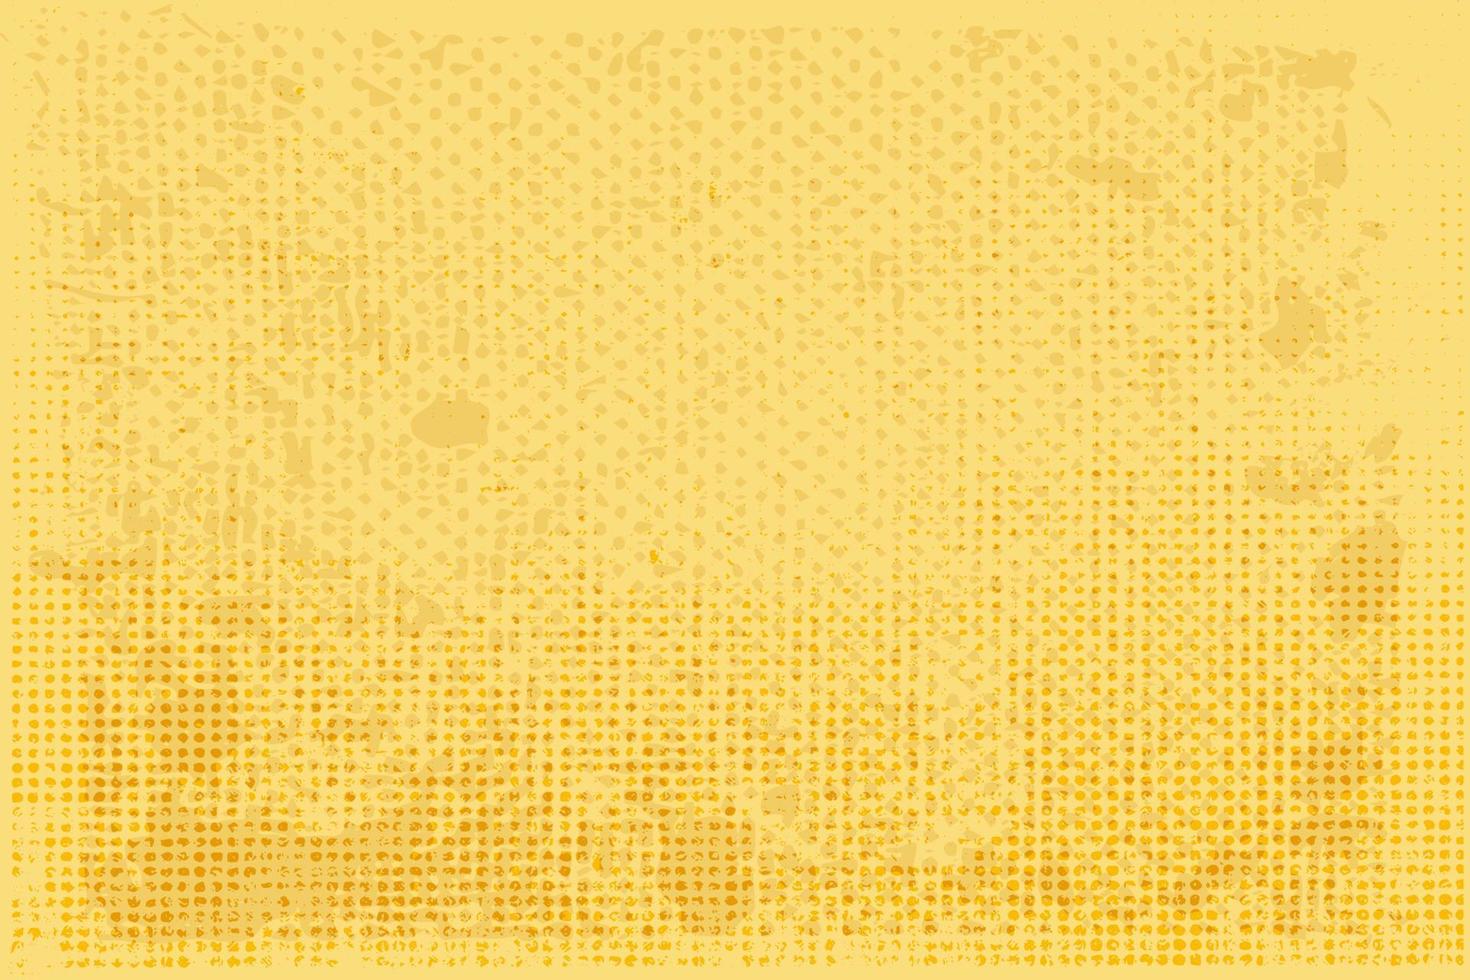 bakgrund gul halvton textur material grunge bakgrund. vektor modern konst textur för affischer, visitkort, omslag, etiketter mock-up, klistermärken layout